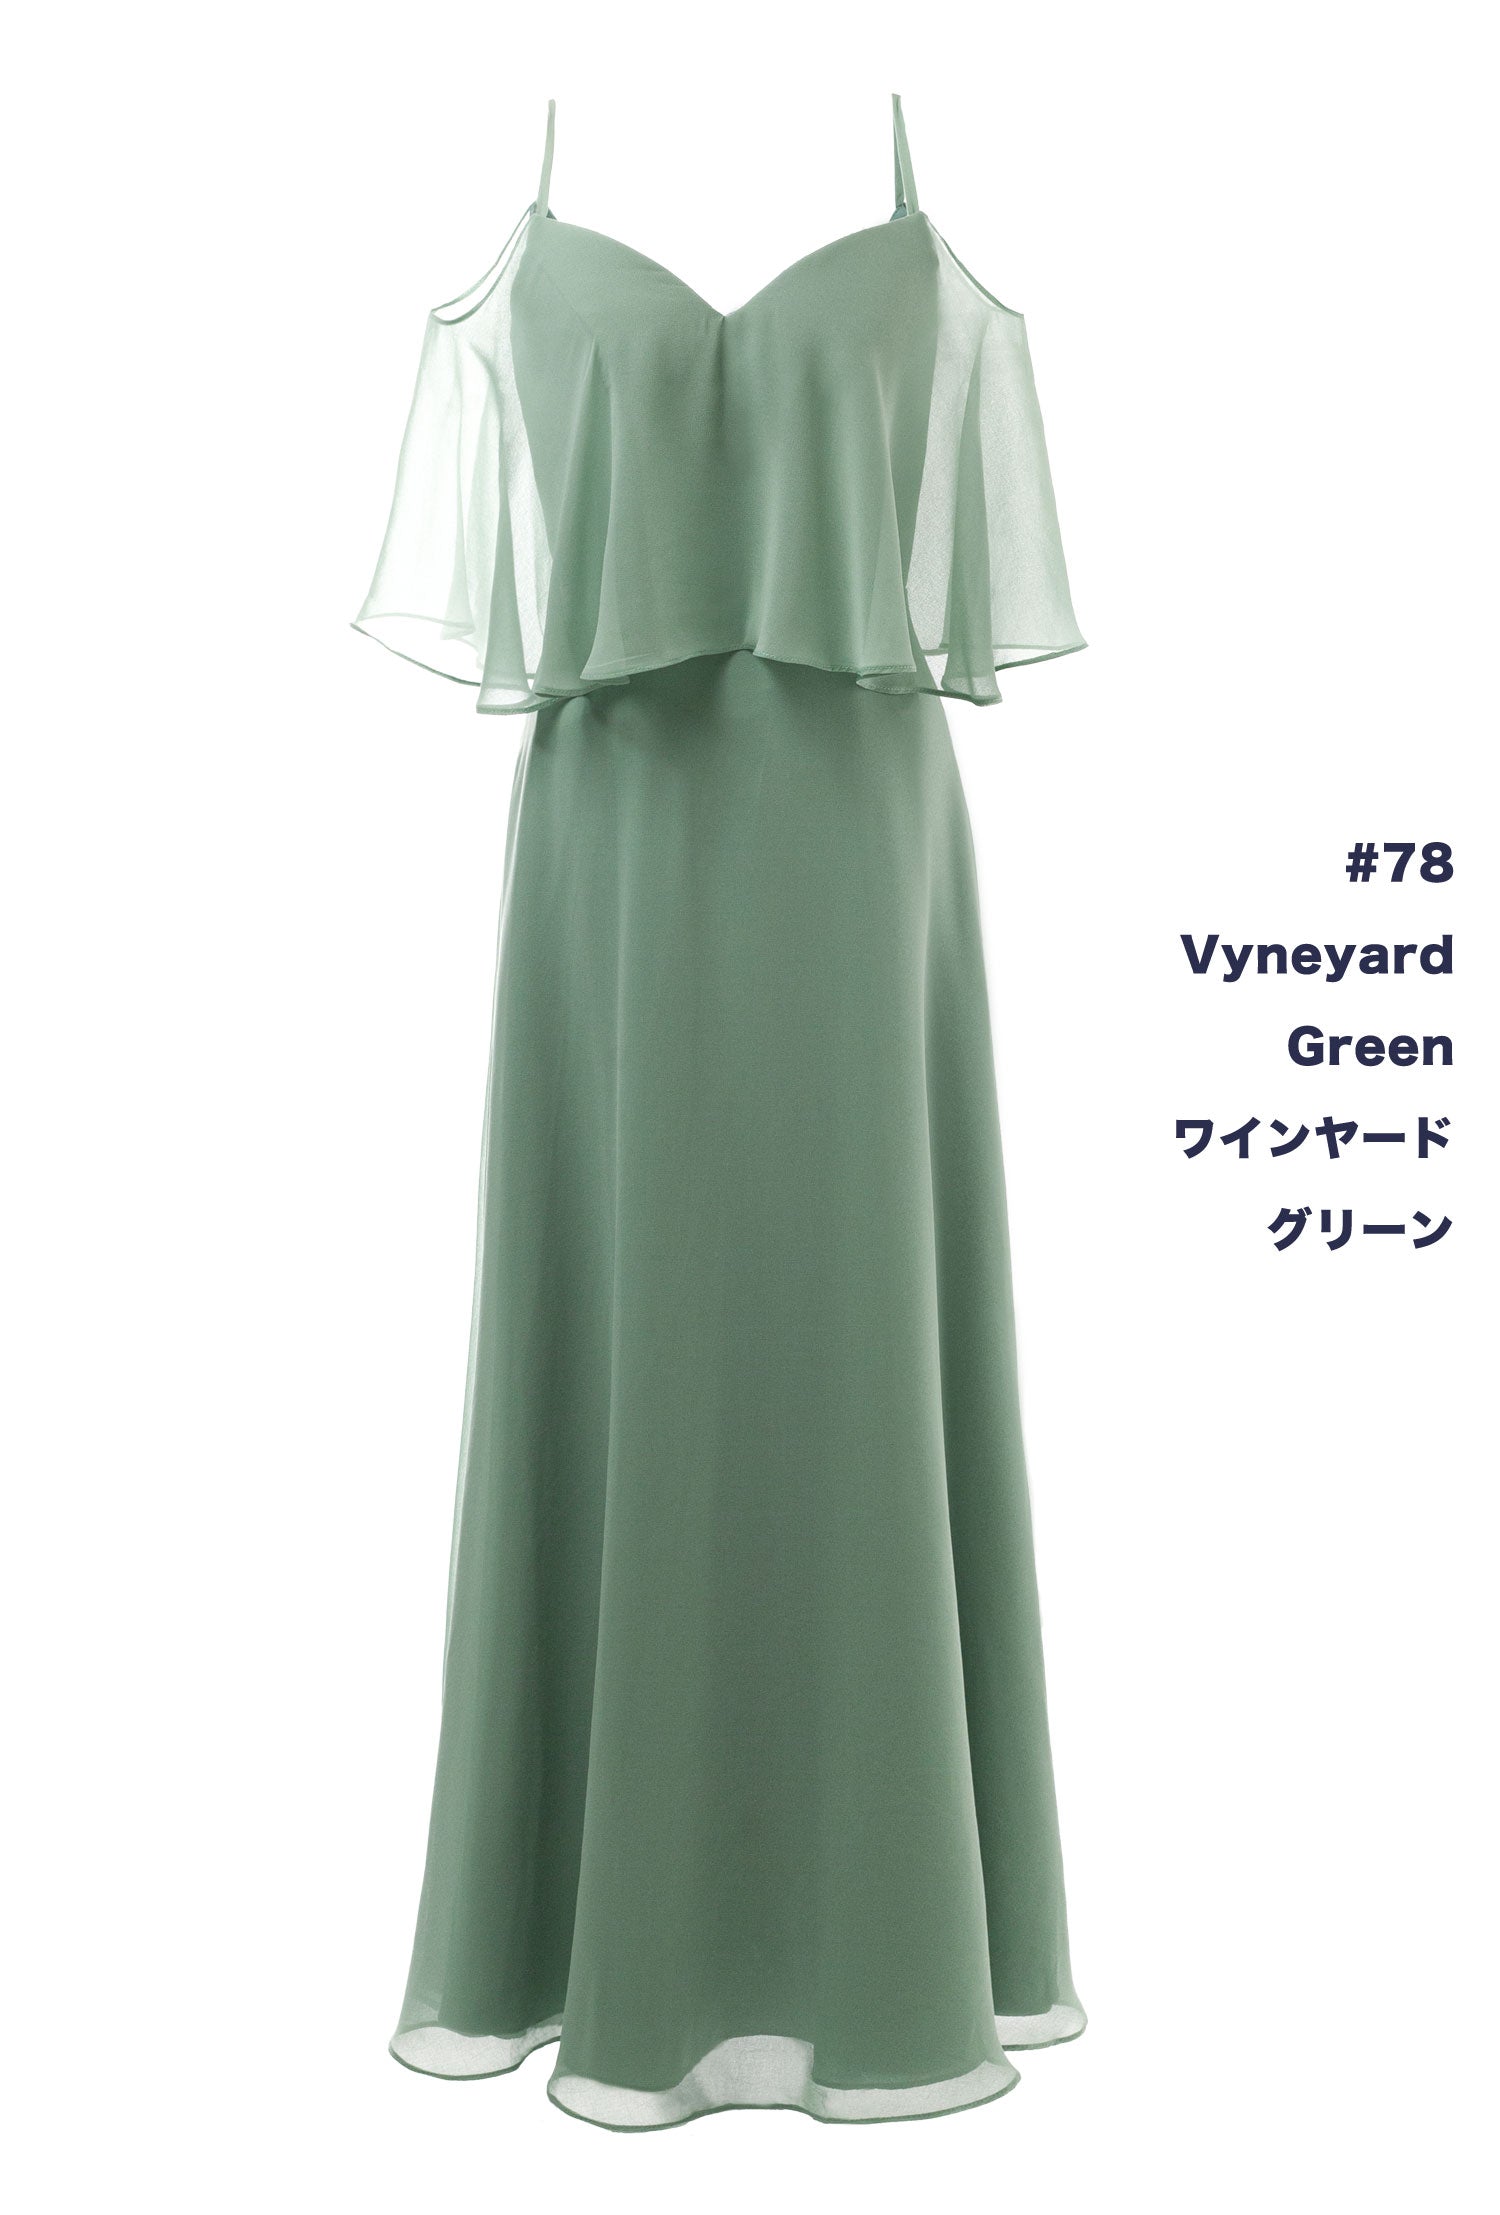 NV1015 2Way Chiffon Long Dress 150 Colors